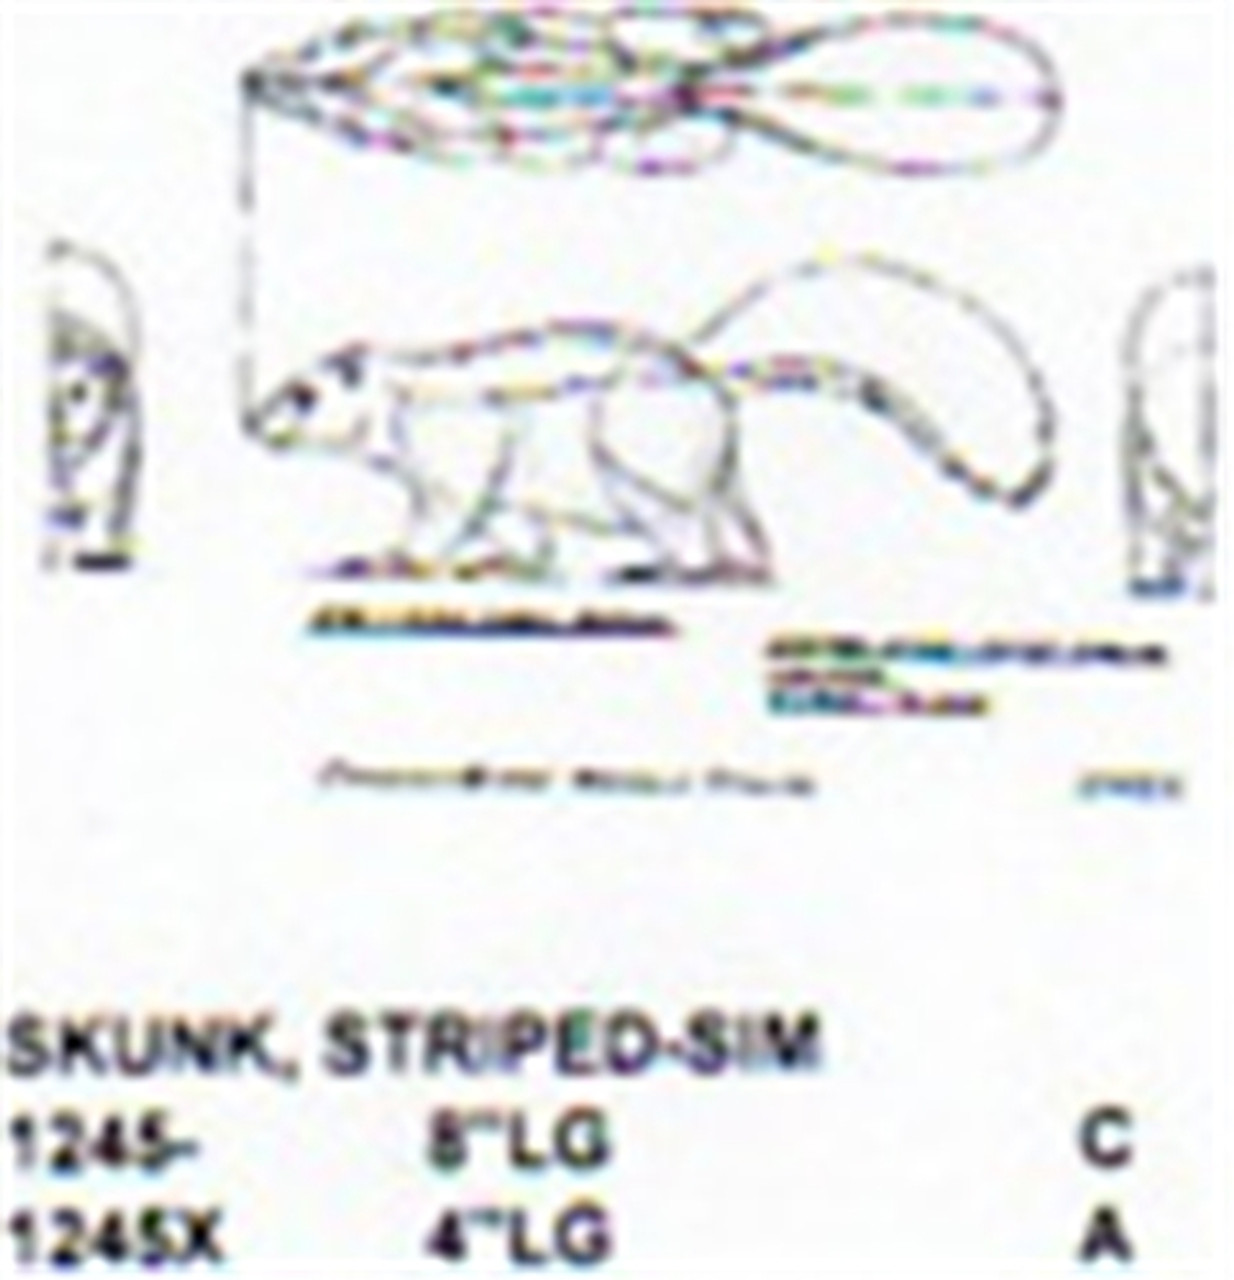 Striped Skunk Walking 4" Long